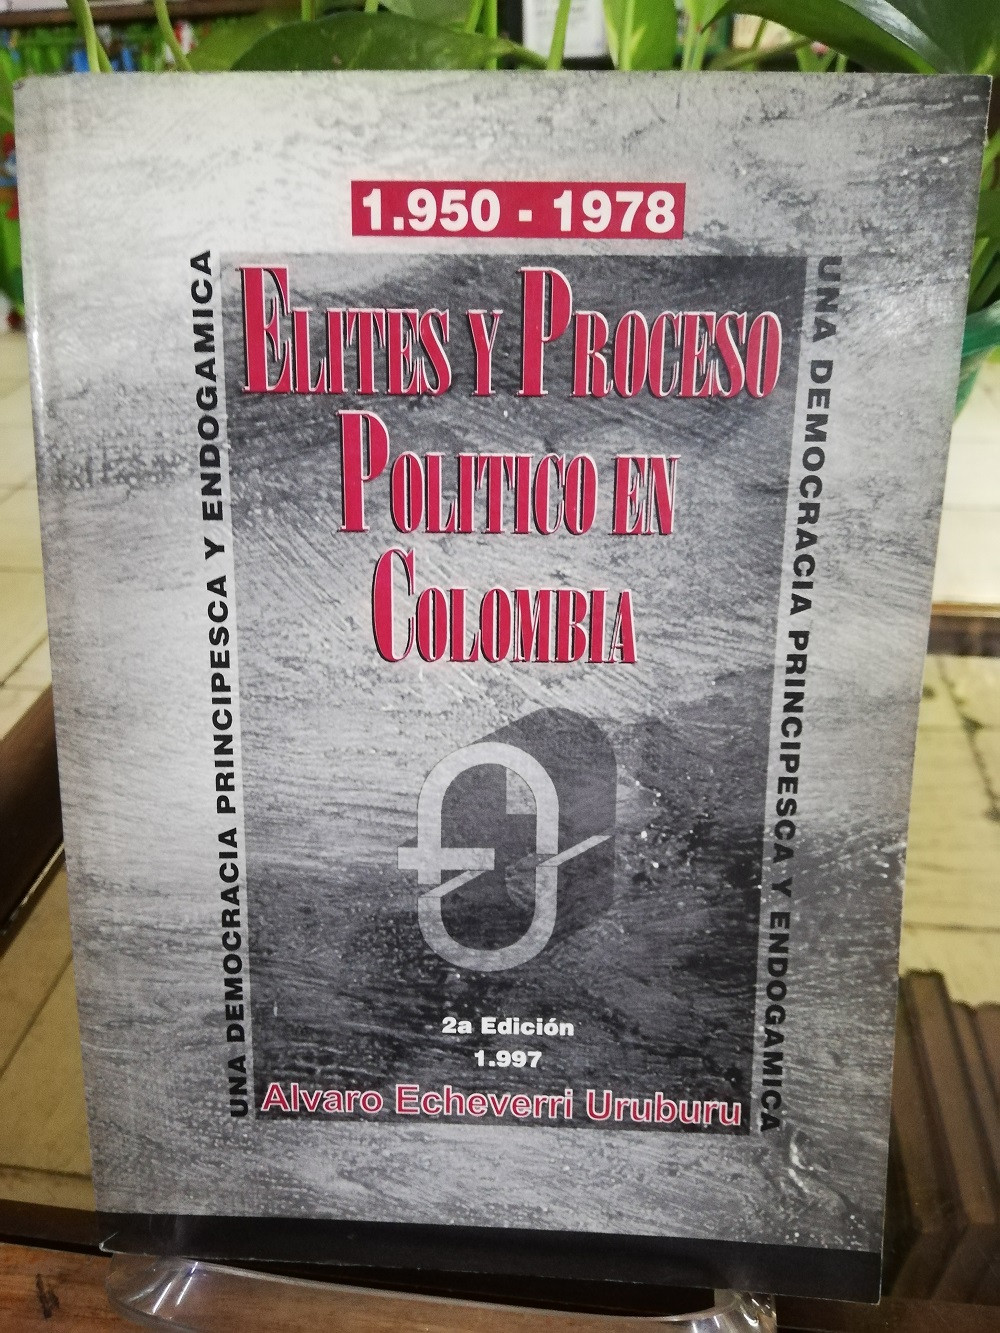 Imagen ELITES Y PROCESOS POLITICOS EN COLOMBIA - ALVARO ECHEVERRI URUBURU 1